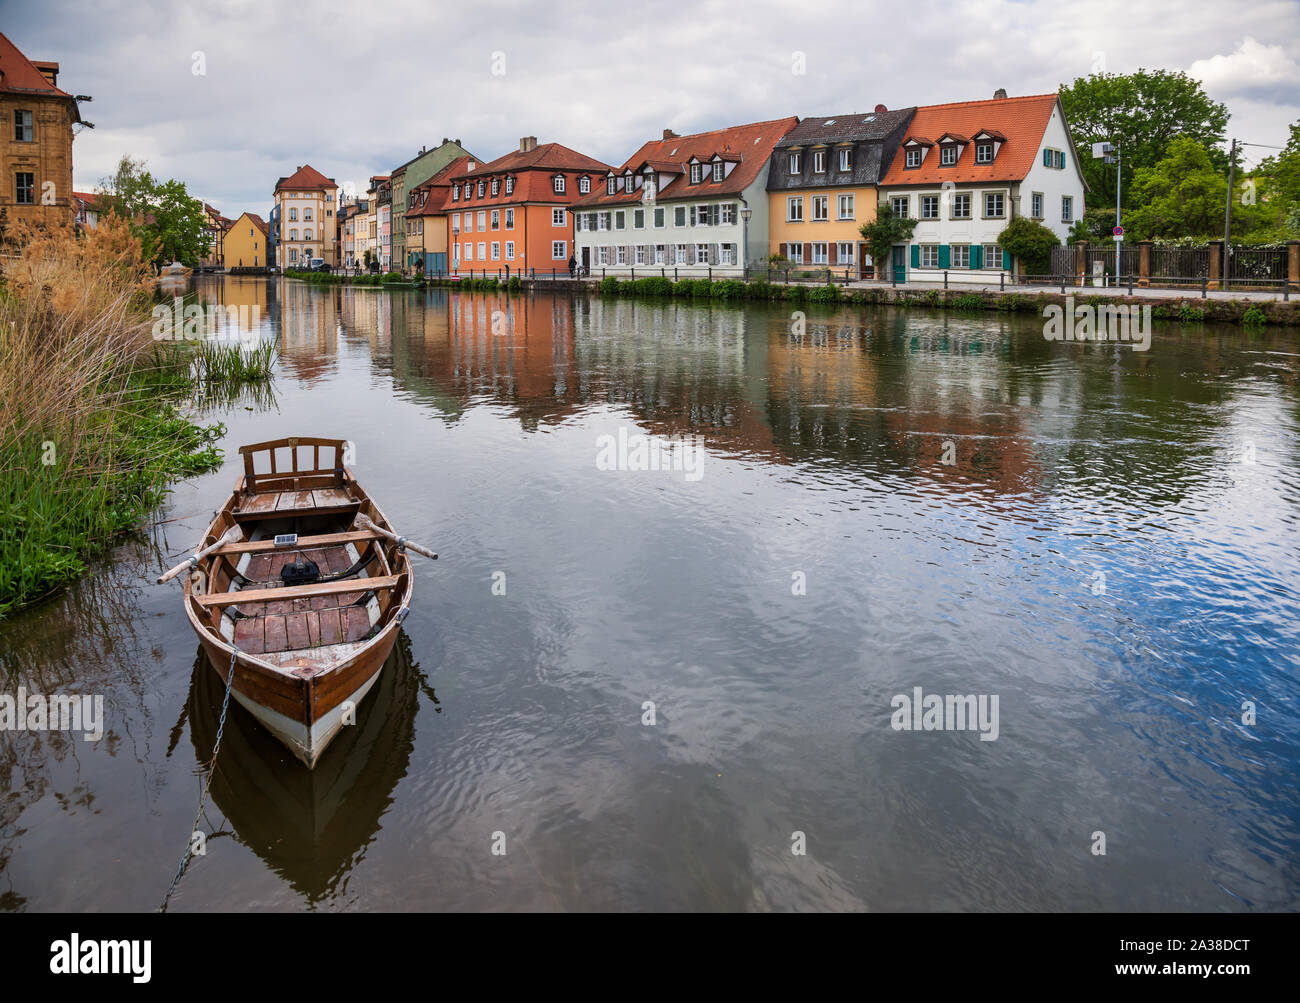 Bamberg Stadtbild mit waterfront Gebäude an der Regnitz, Bayern, Deutschland, Europa. Bamberg ist eine der beliebtesten Reiseziele in Germ Stockfoto